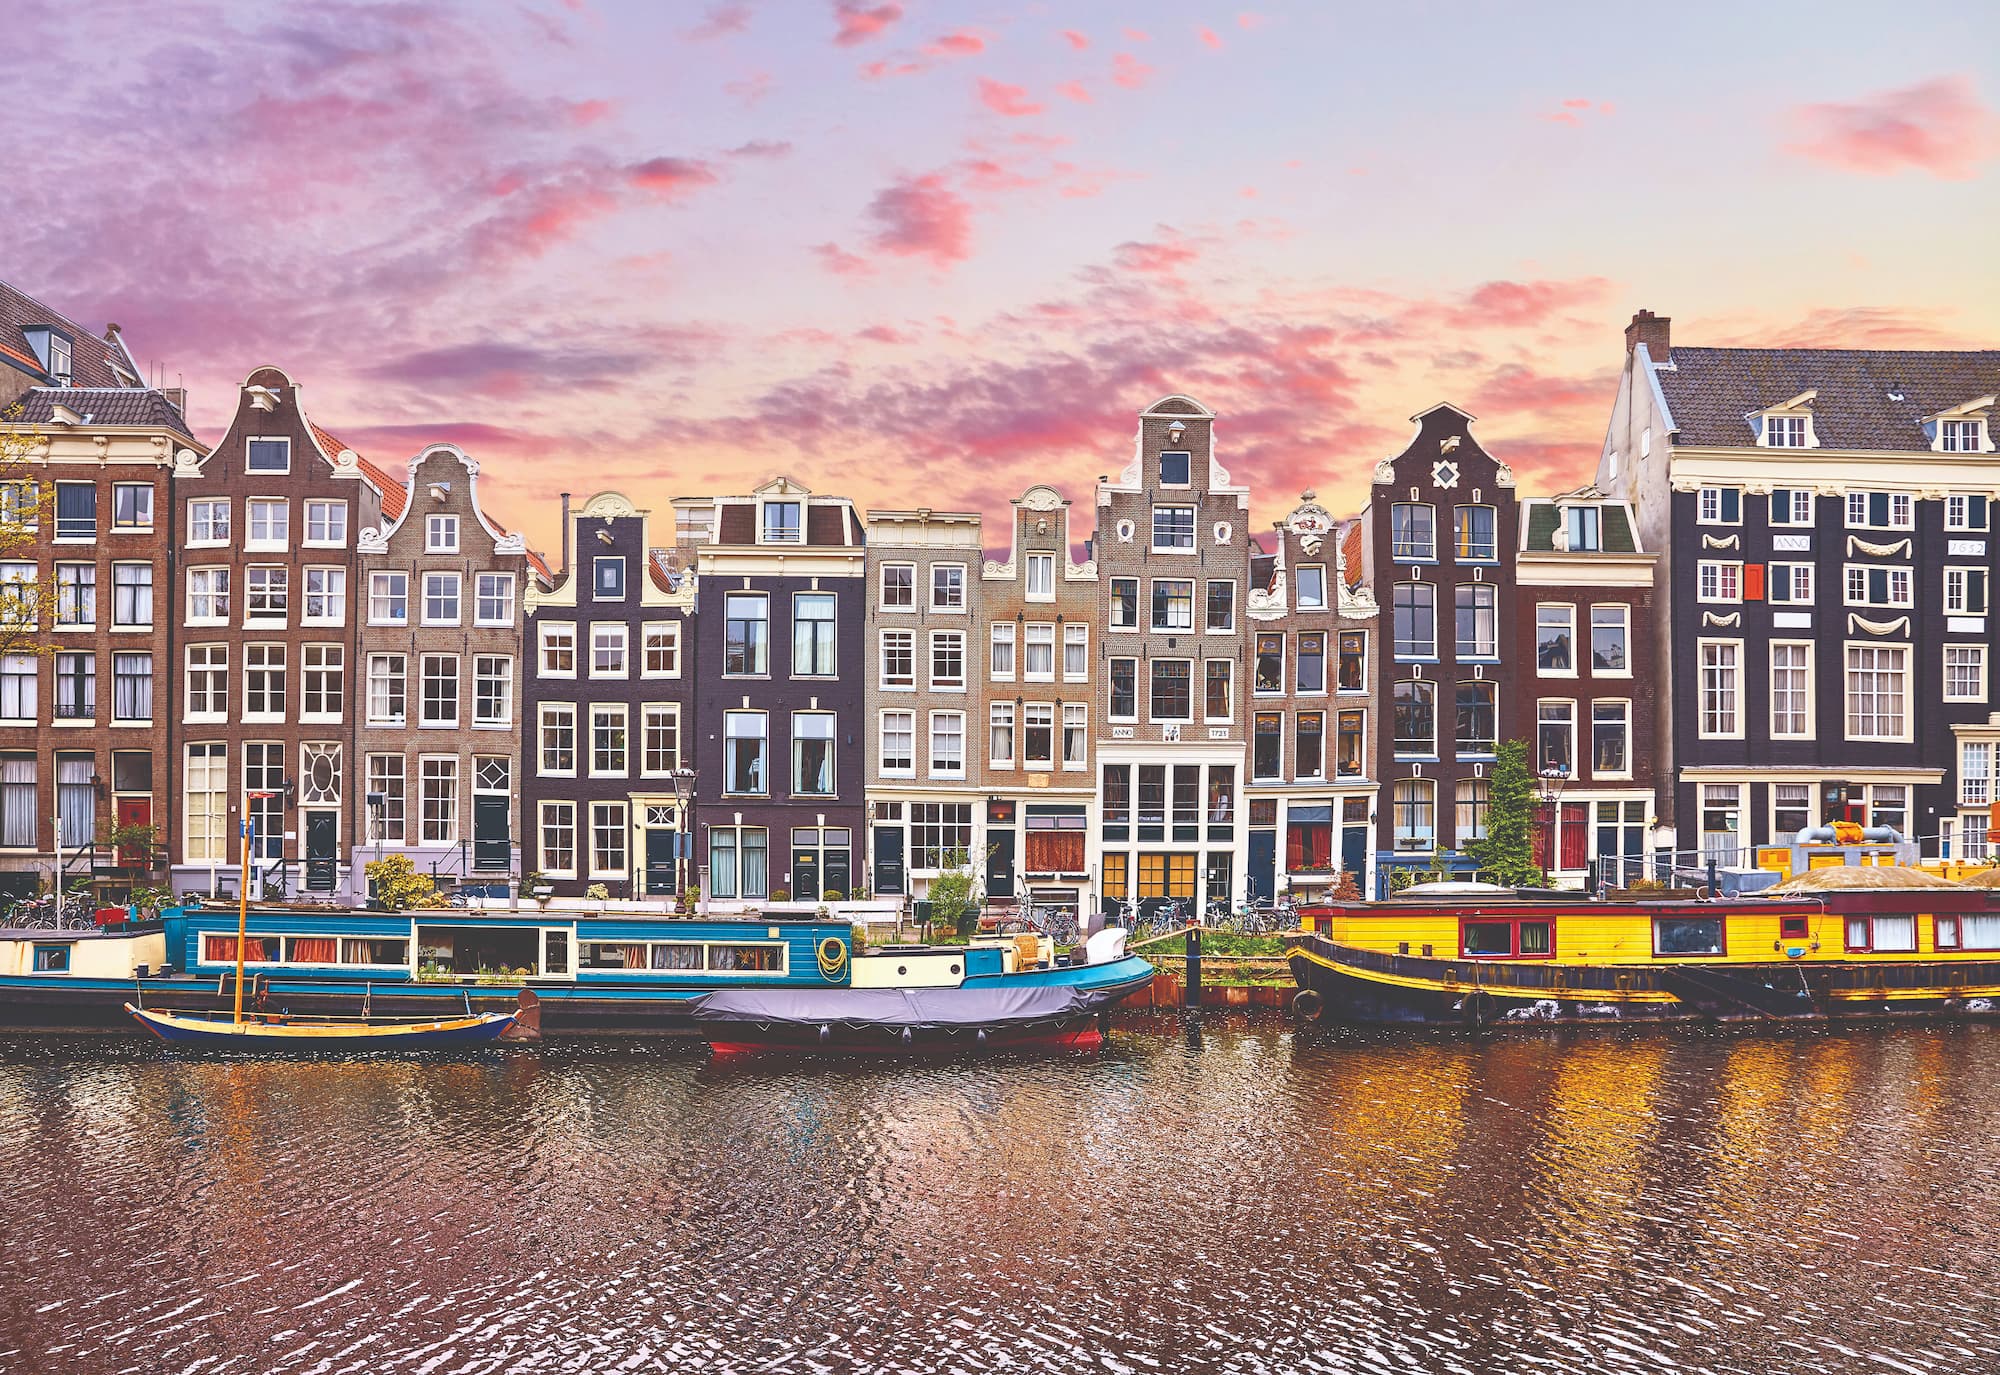 Amsterdã atrai com sua rica história e atmosfera romântica